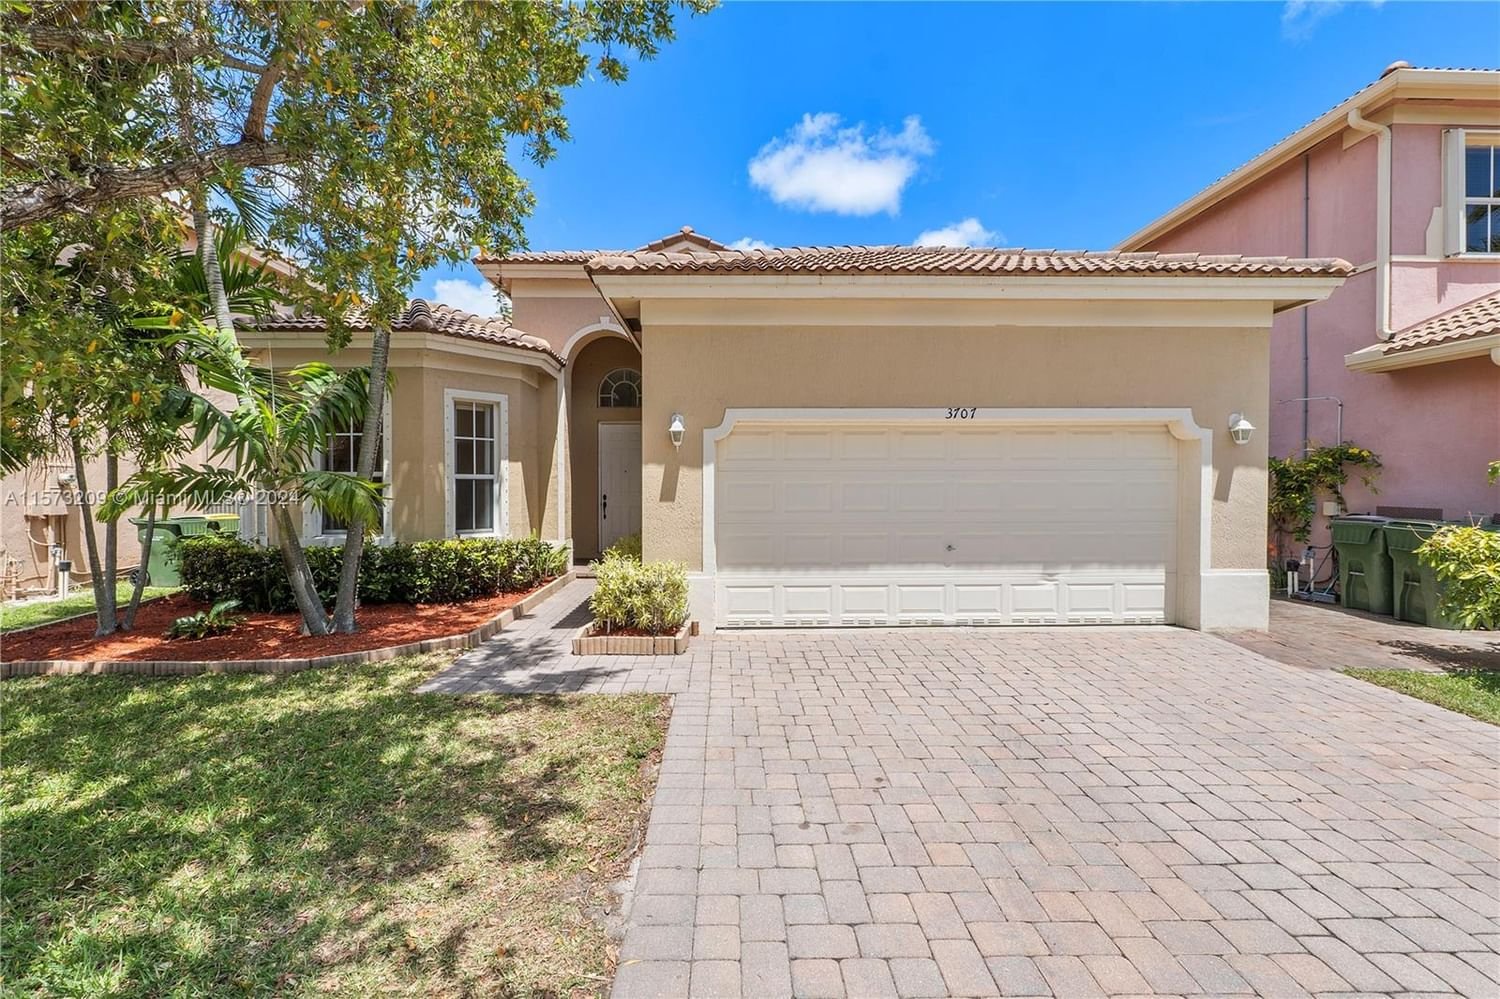 Real estate property located at 3707 19th St, Miami-Dade County, PORTOFINO LAKES, Homestead, FL